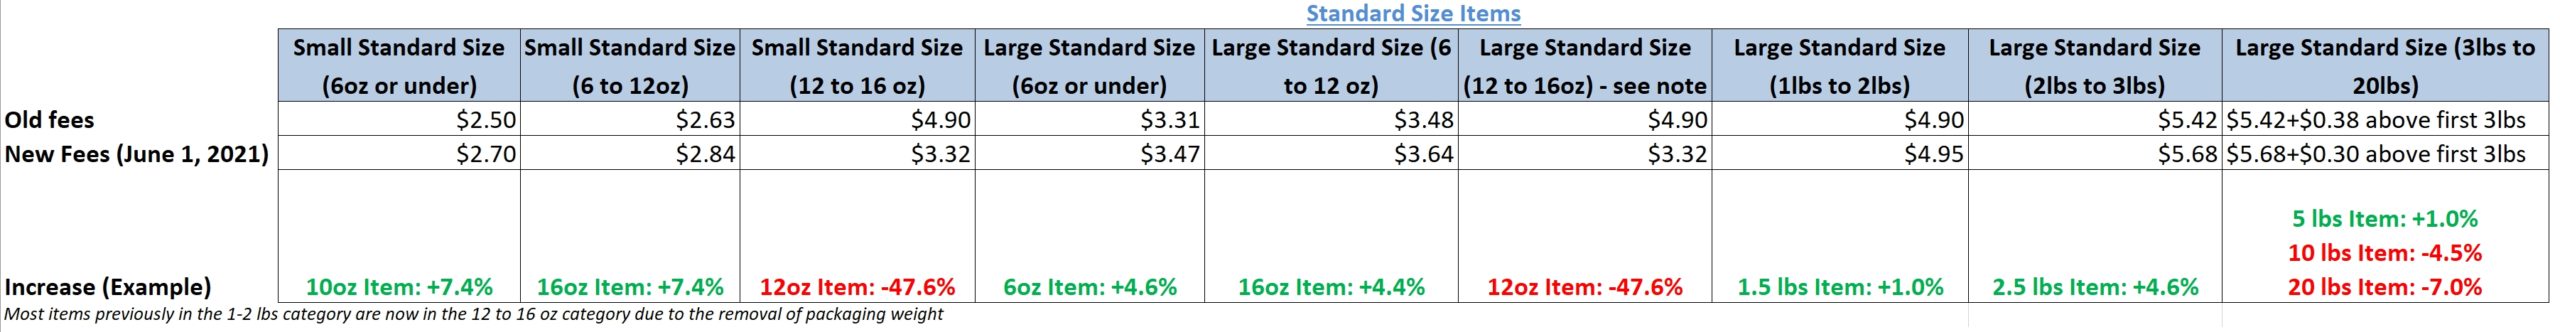 standard size amazon fba increases 2021